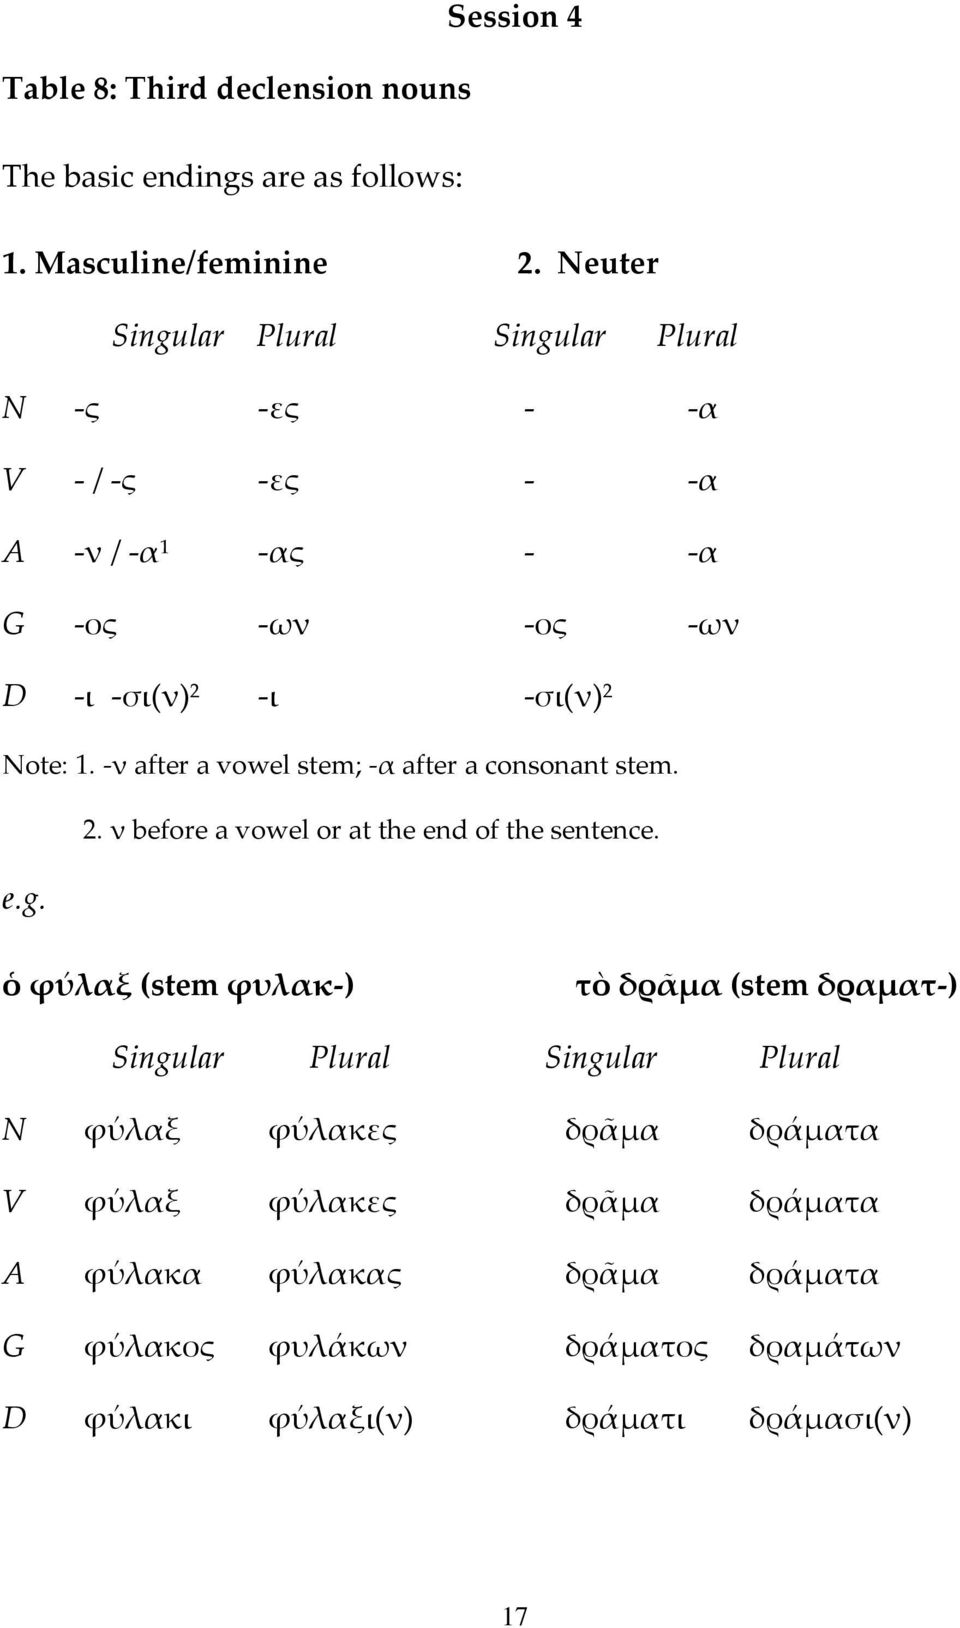 -ν after a vowel stem; -α after a consonant stem. 2. ν before a vowel or at the end of the sentence. e.g.